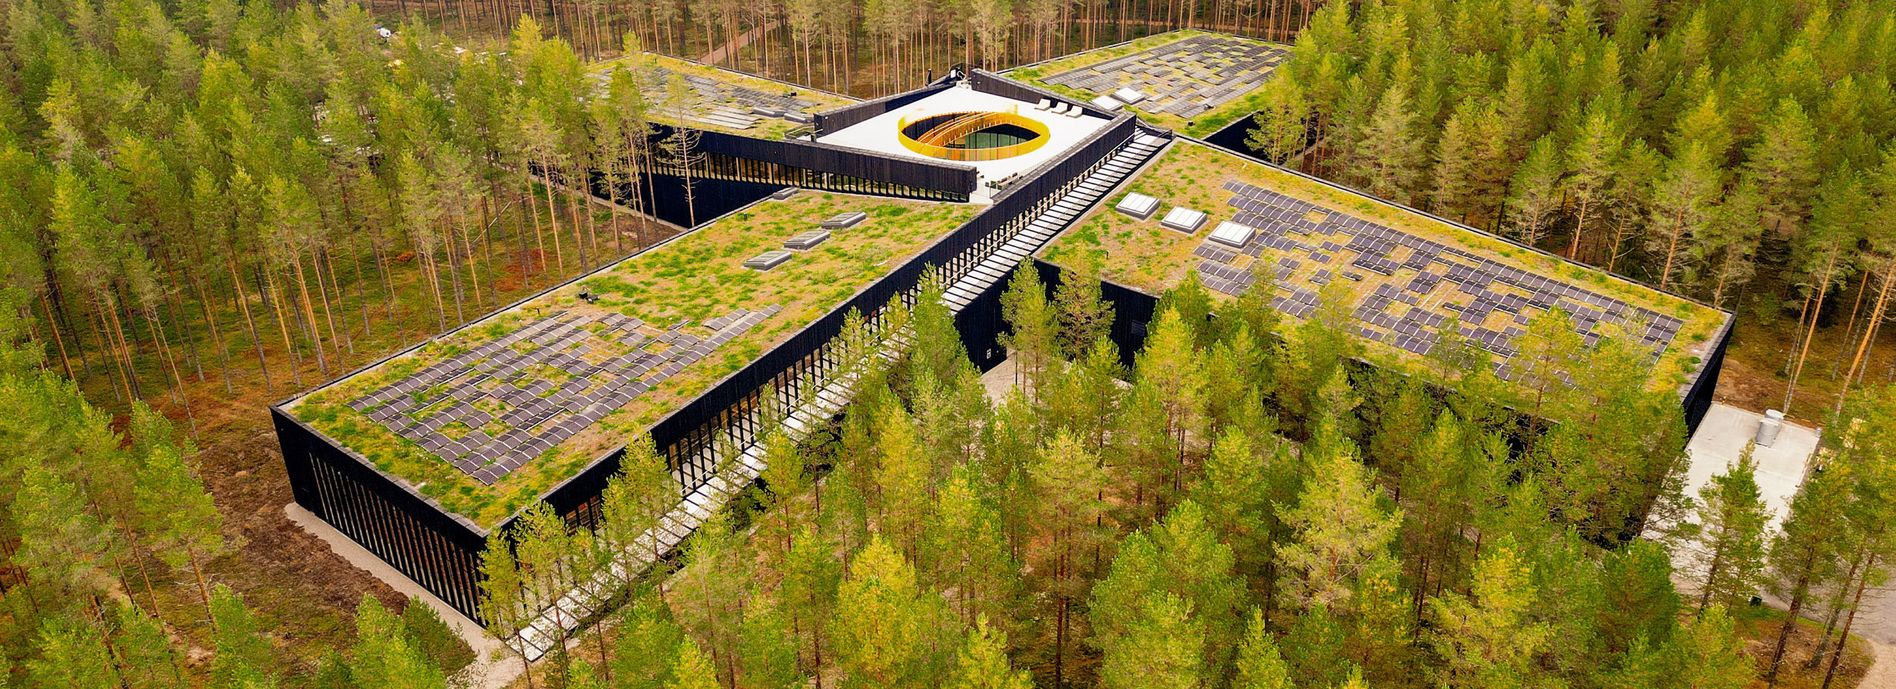 Arkitekter må tenke solceller fra første stund, mener Willgohs. Her, ved Vestre møbelfabrikk i Eidskog, er solcellene del av det arkitektoniske uttrykket. <i>Foto:  TUM Studio</i>